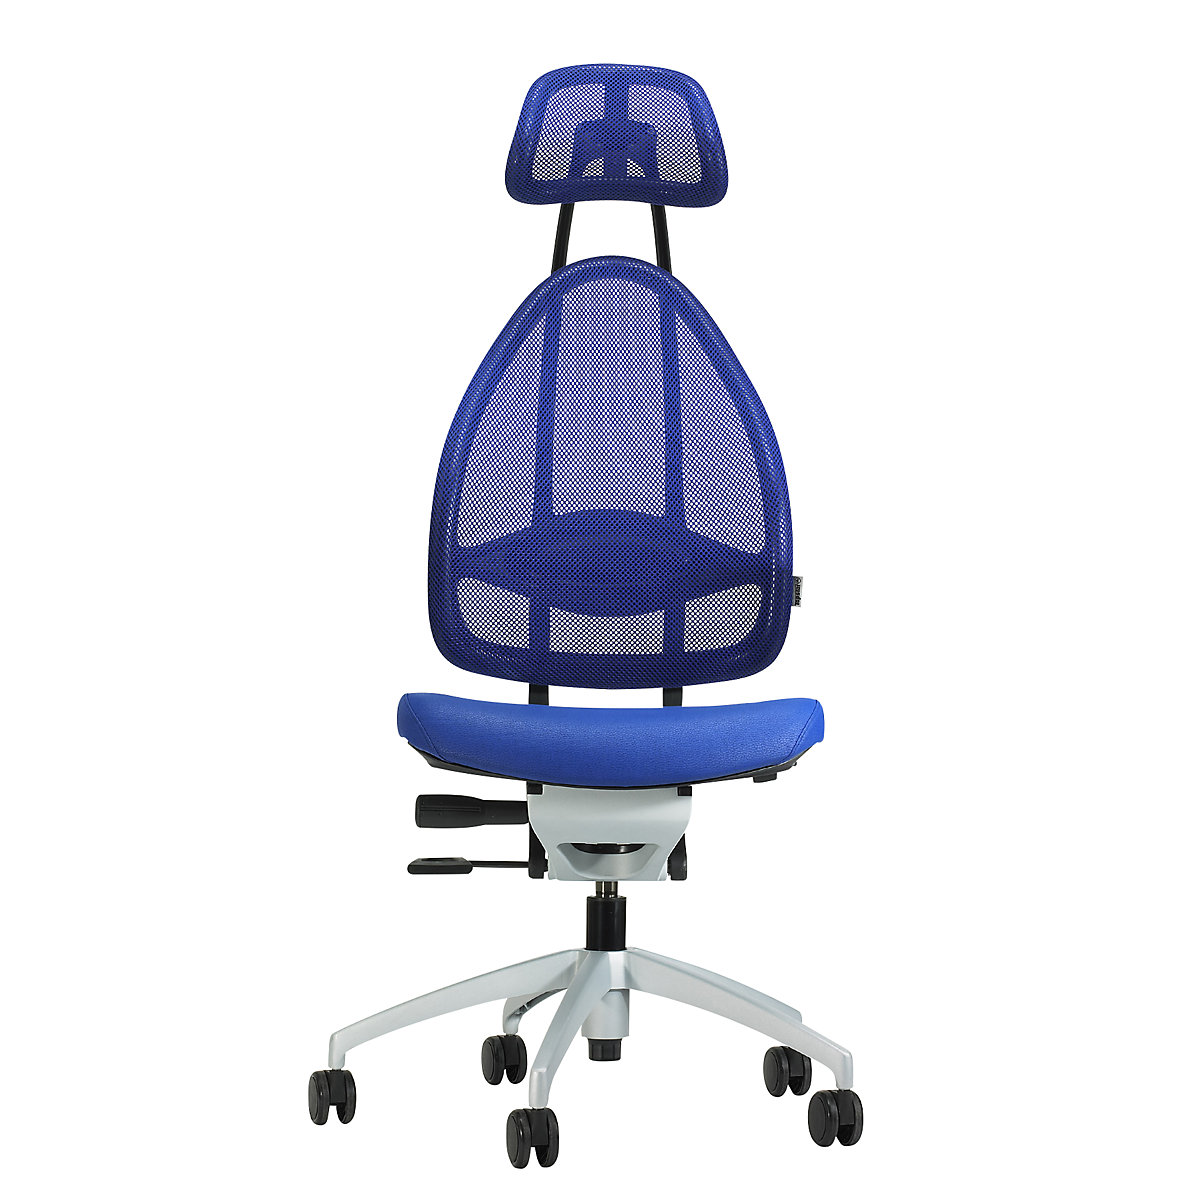 Dizajnová kancelárska otočná stolička s opierkou hlavy a sieťkovým operadlom - Topstar